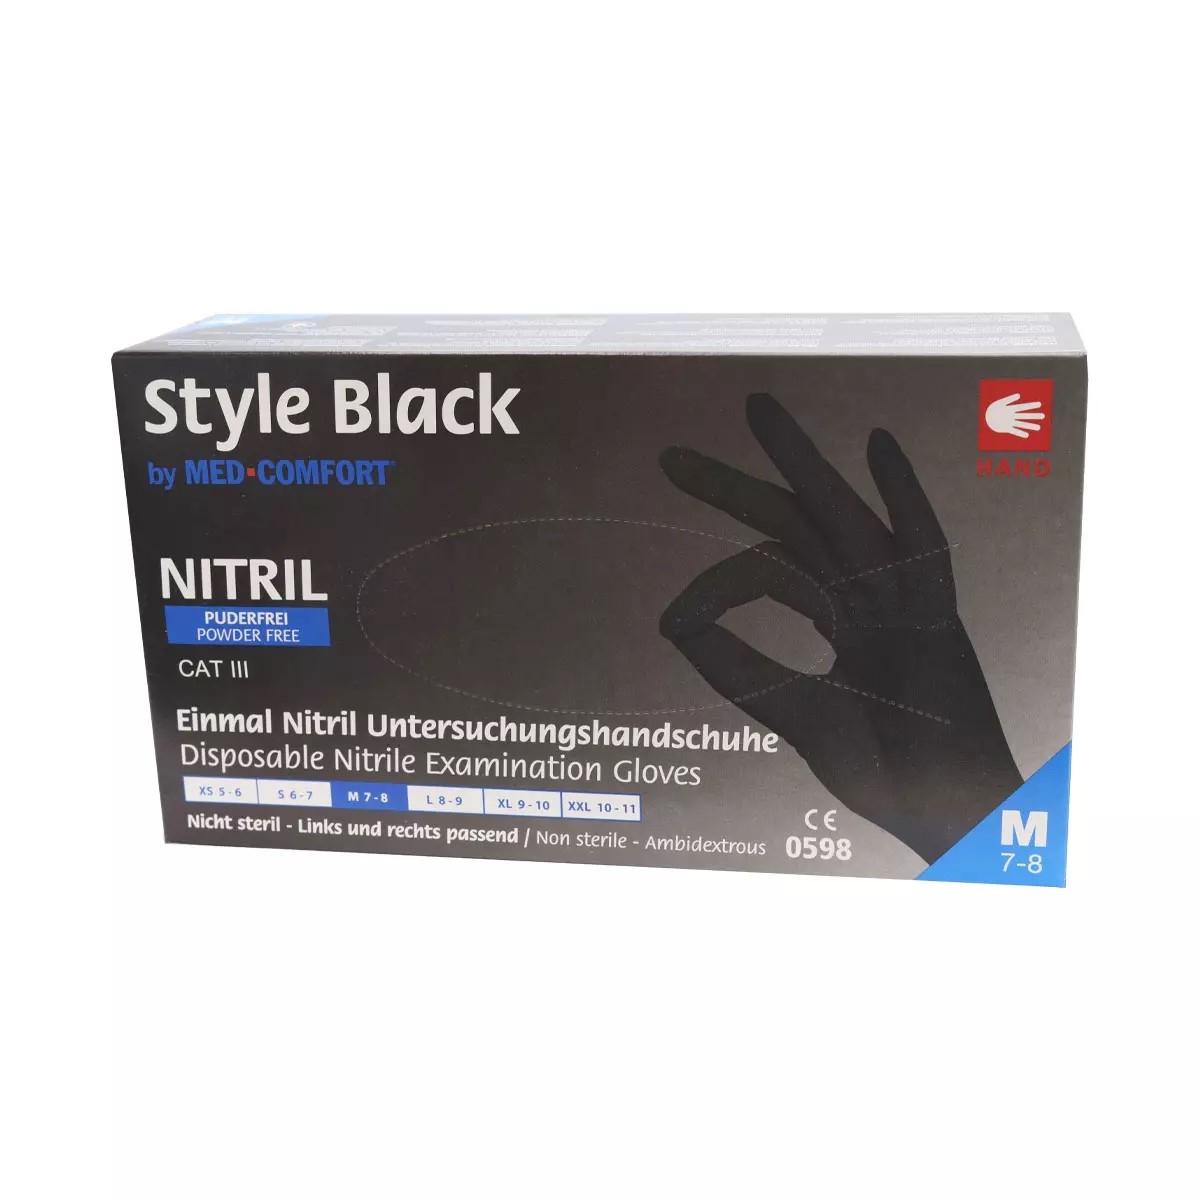 AMPRI-Hand-Schutz, Einweg-Nitril-Einmal-Handschuhe, STYLE BLACK, ungepudert, schwarz,  Pkg  100 Stck, VE = 10 Pkg.